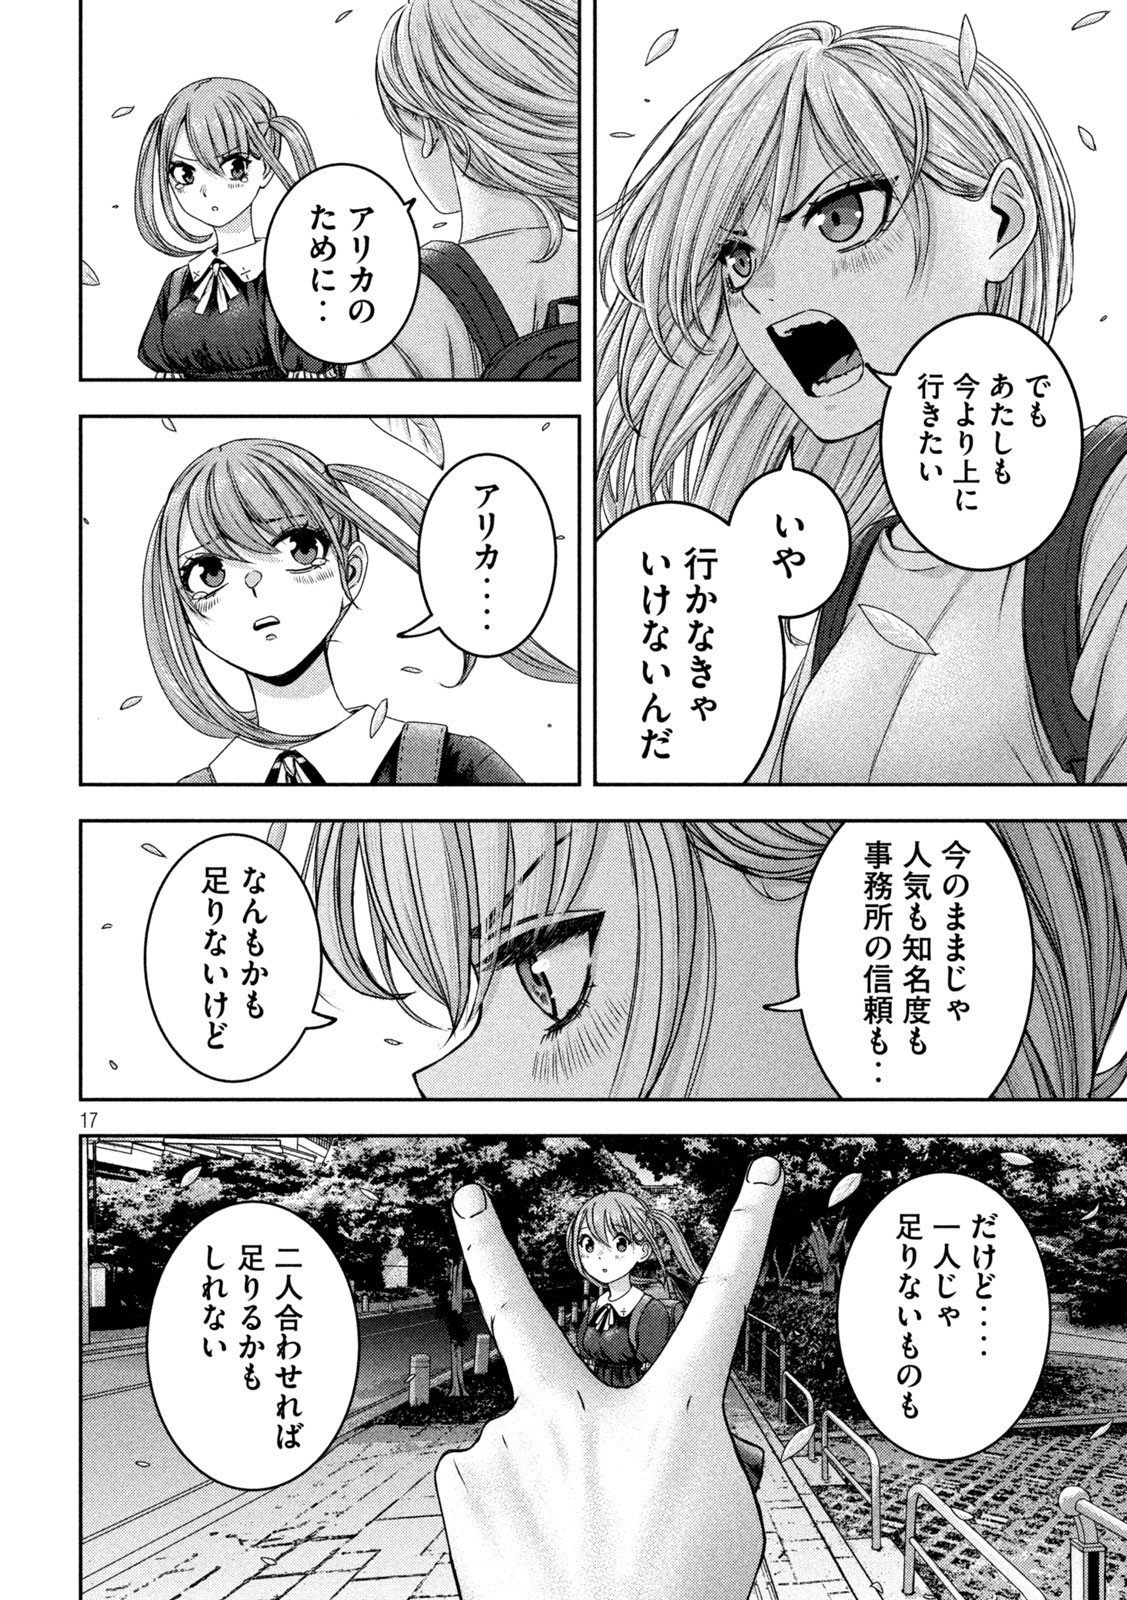 Watashi no Arika - Chapter 36 - Page 17